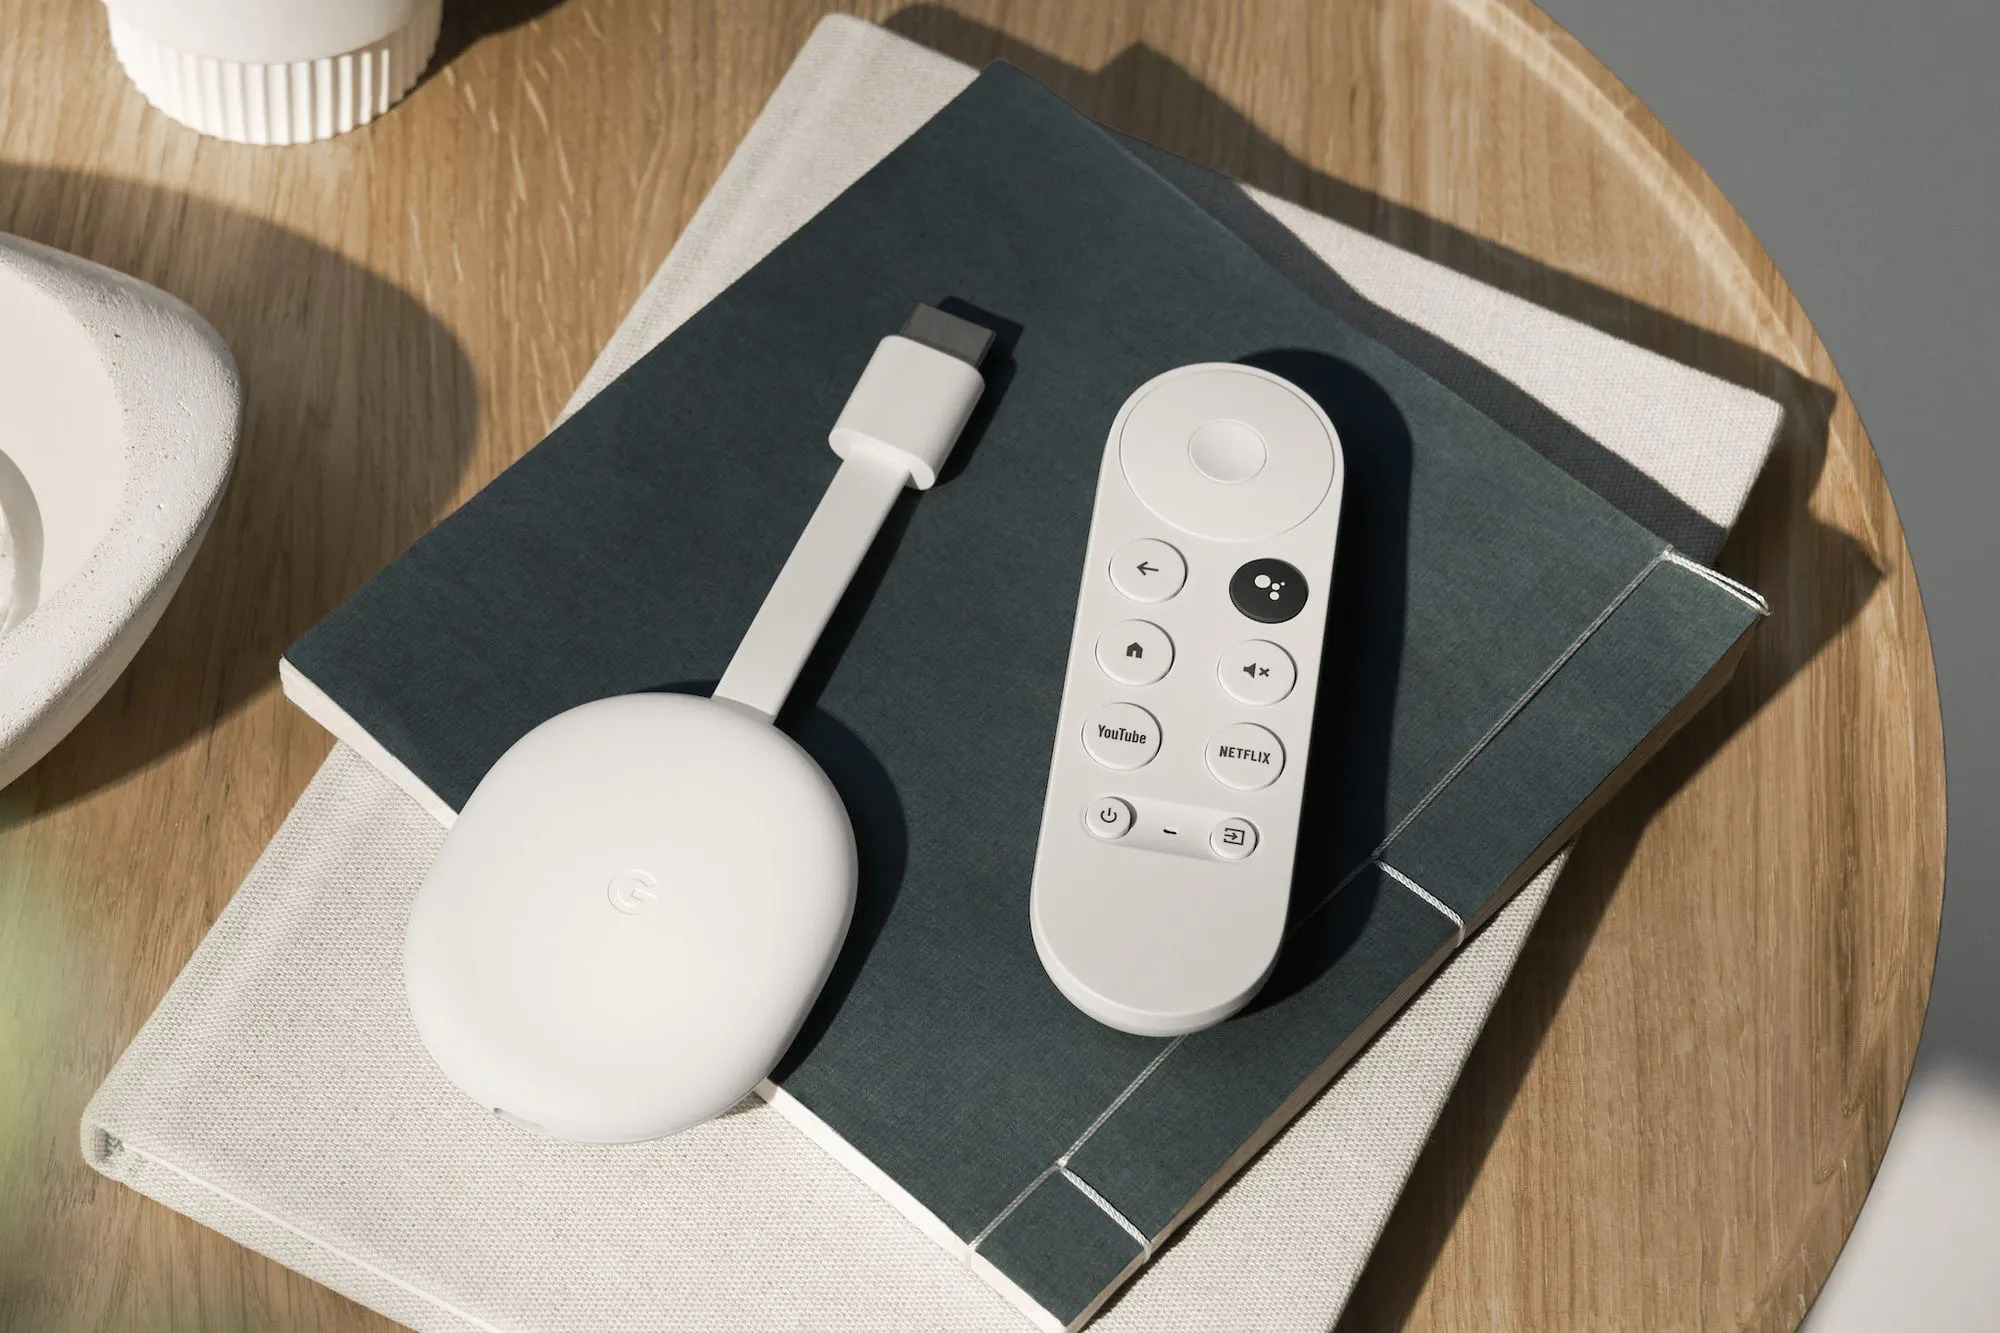 Oferta ograniczona czasowo: Chromecast z Google TV (HD) na Amazon za 33% taniej